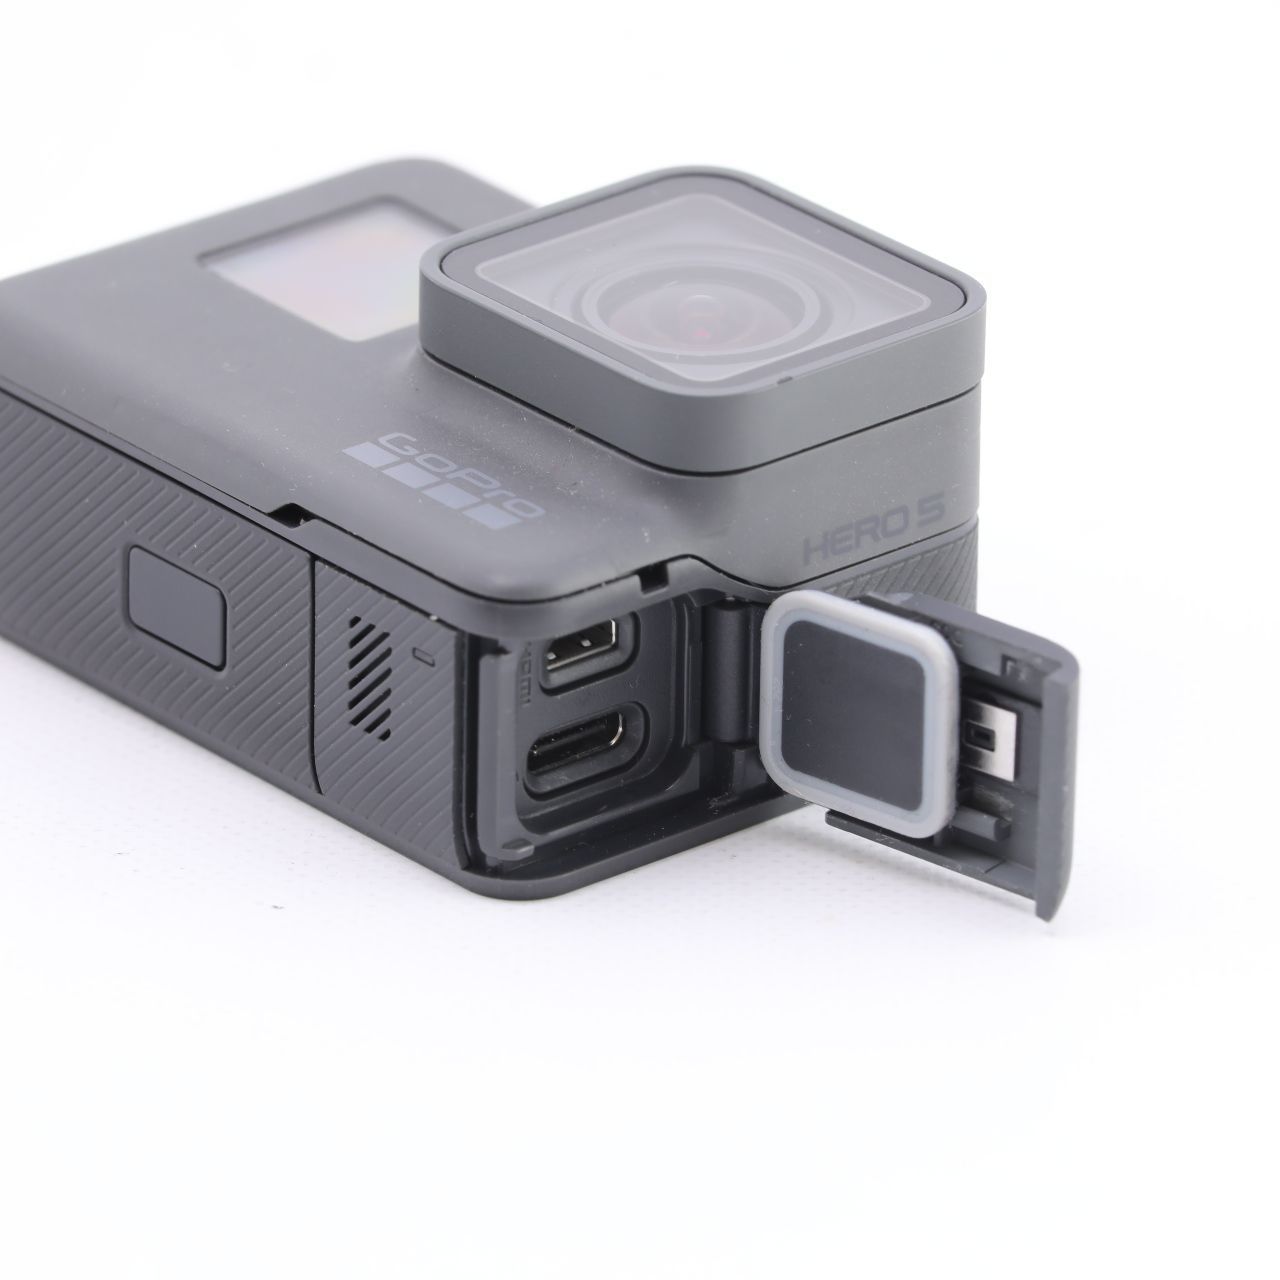 新品　GoPro HERO5 BLACK　CHDHX-502　国内正規品